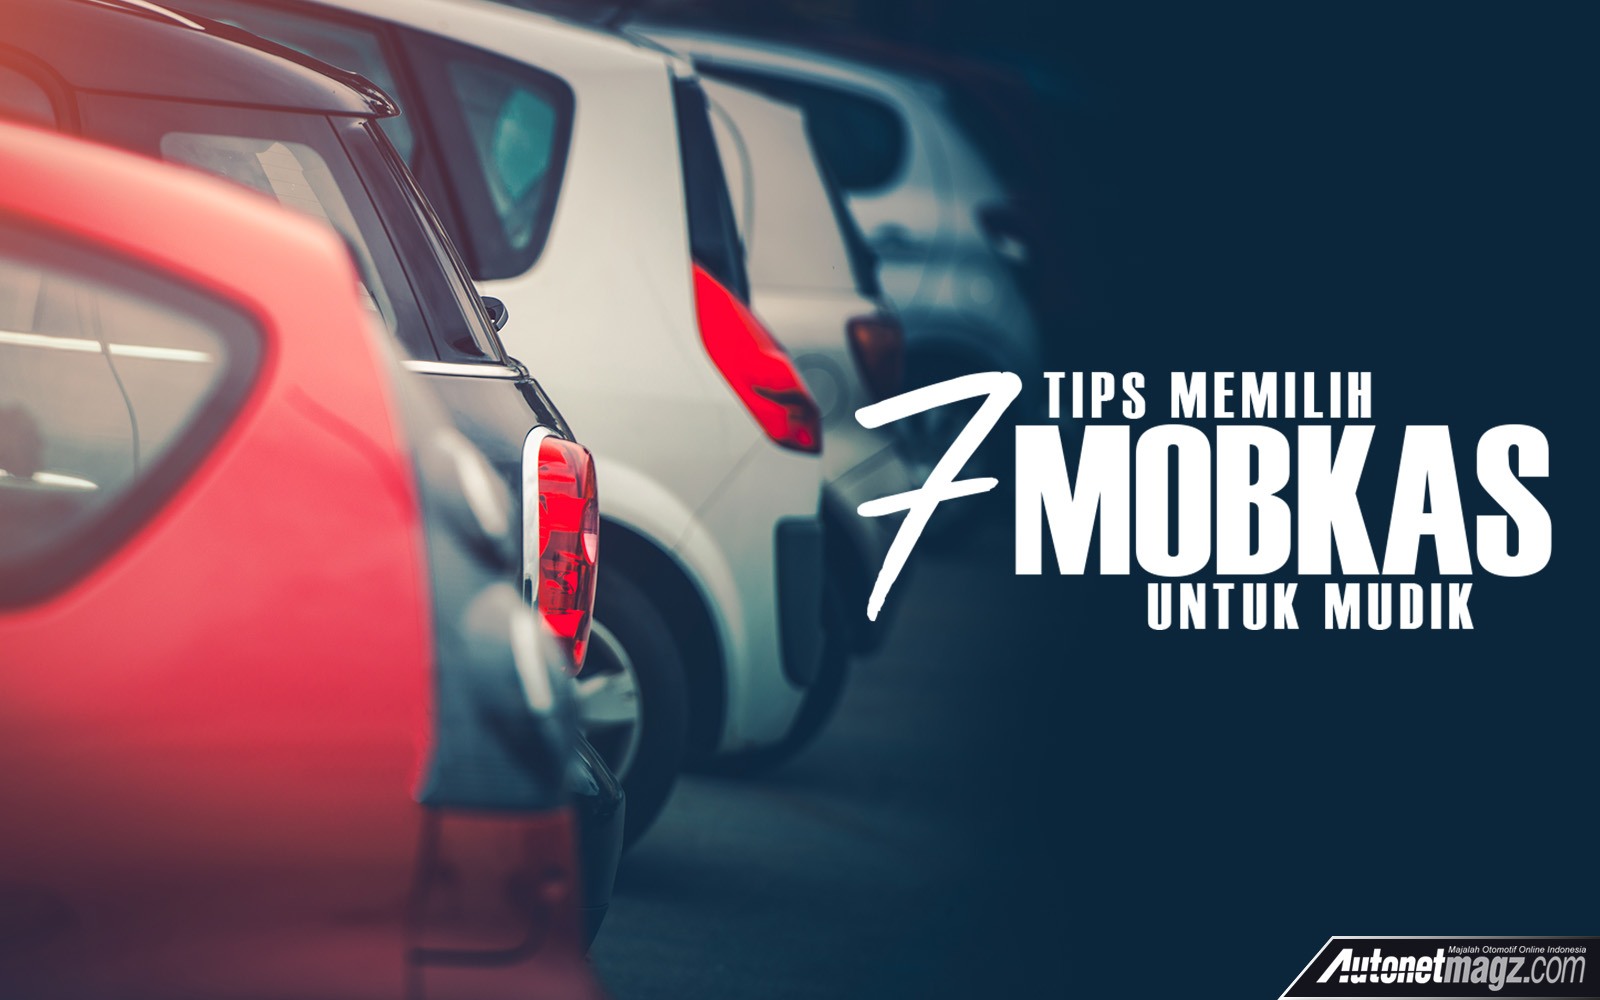 Serba 7, 7 tips mobkas: Tips Memilih Mobil Bekas Untuk Mudik Ala AutonetMagz